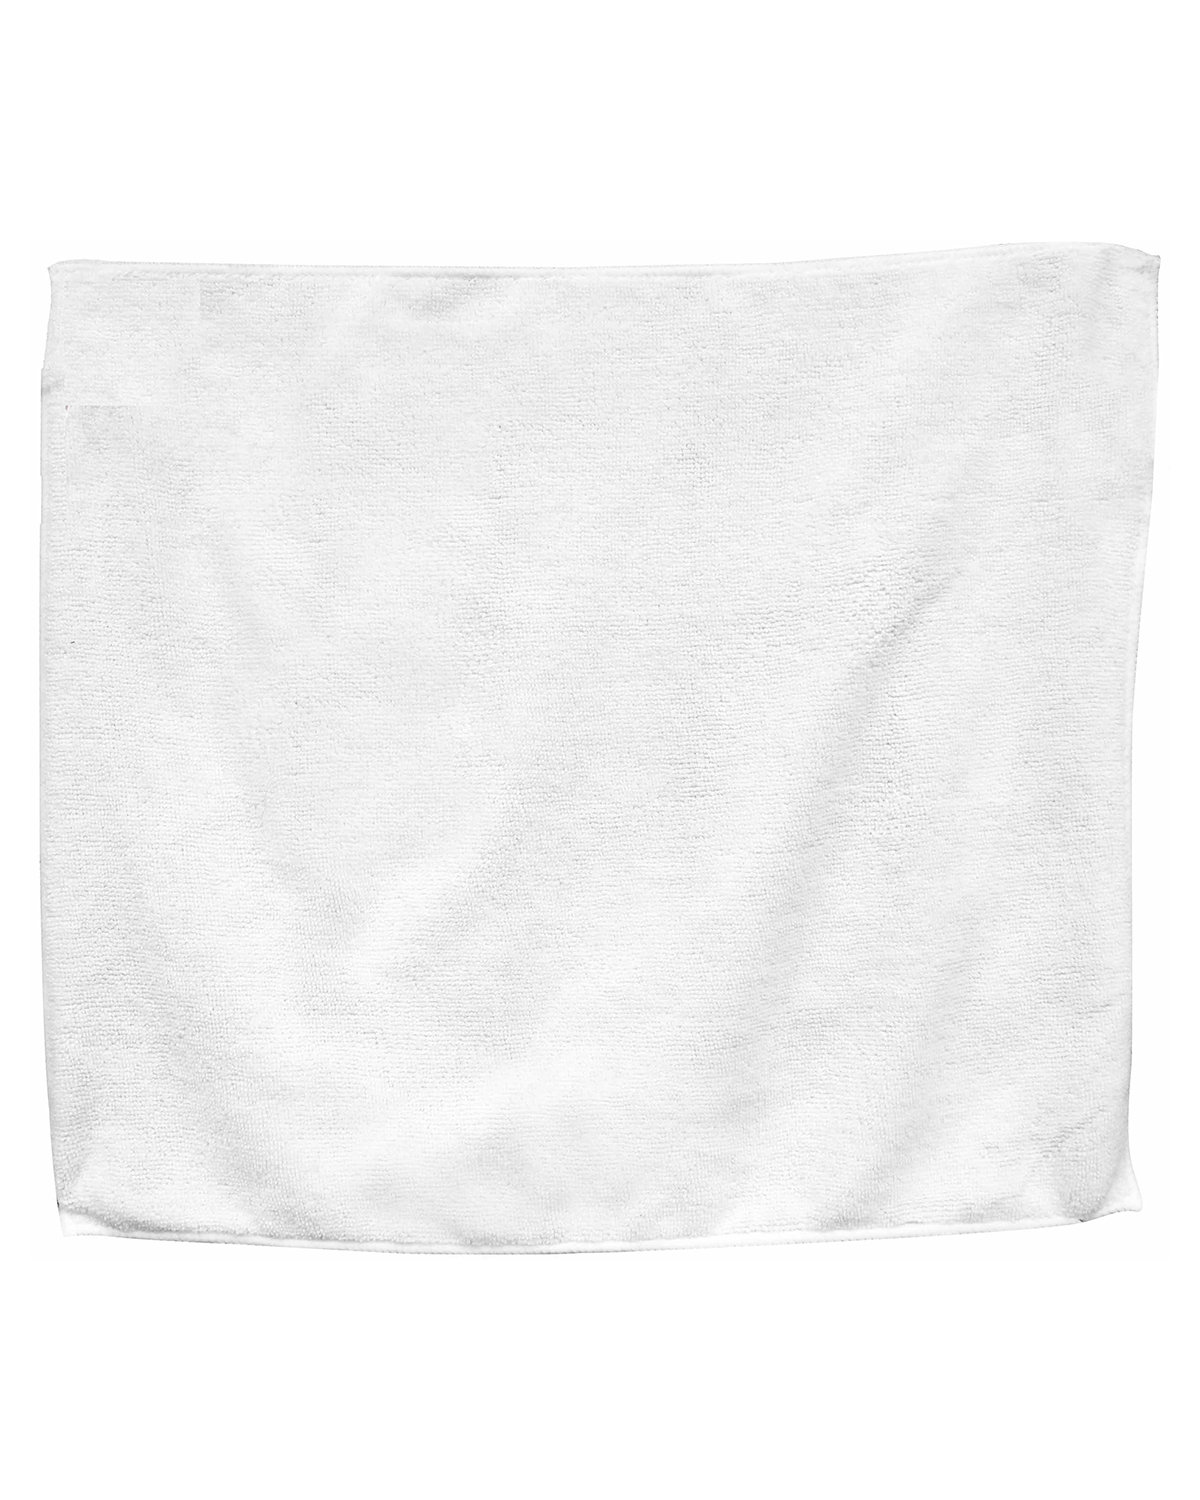 C1726 Carmel Towels Tea Towel